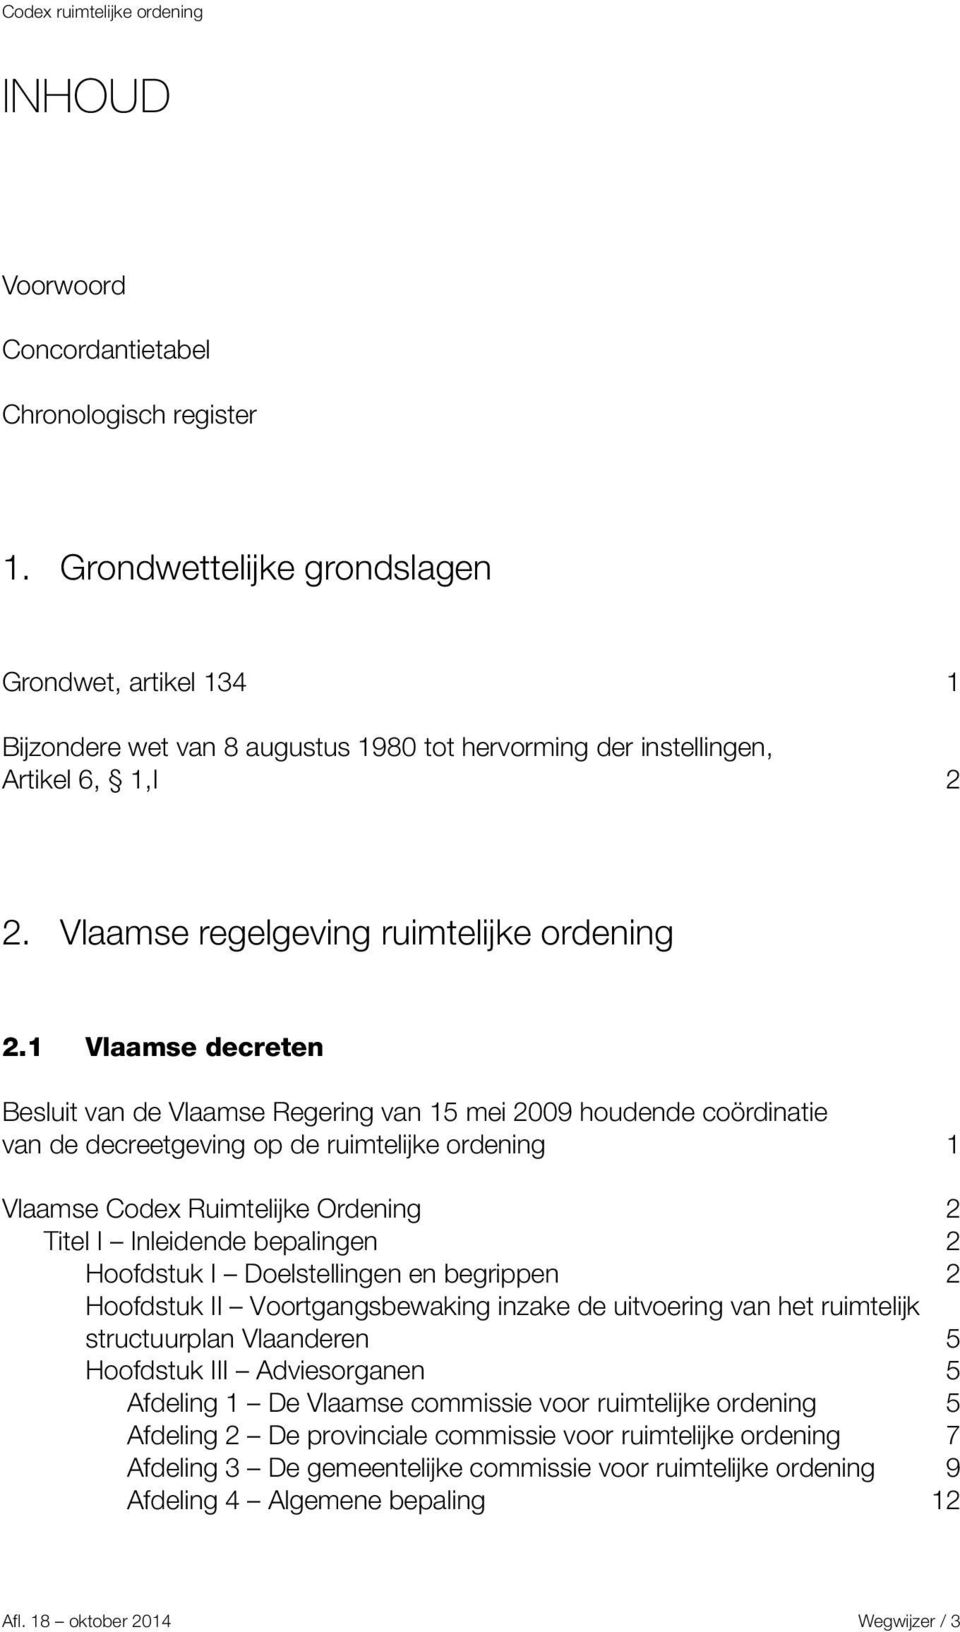 1 Vlaamse decreten Besluit van de Vlaamse Regering van 15 mei 2009 houdende coördinatie van de decreetgeving op de ruimtelijke ordening 1 Vlaamse Codex Ruimtelijke Ordening 2 Titel I Inleidende